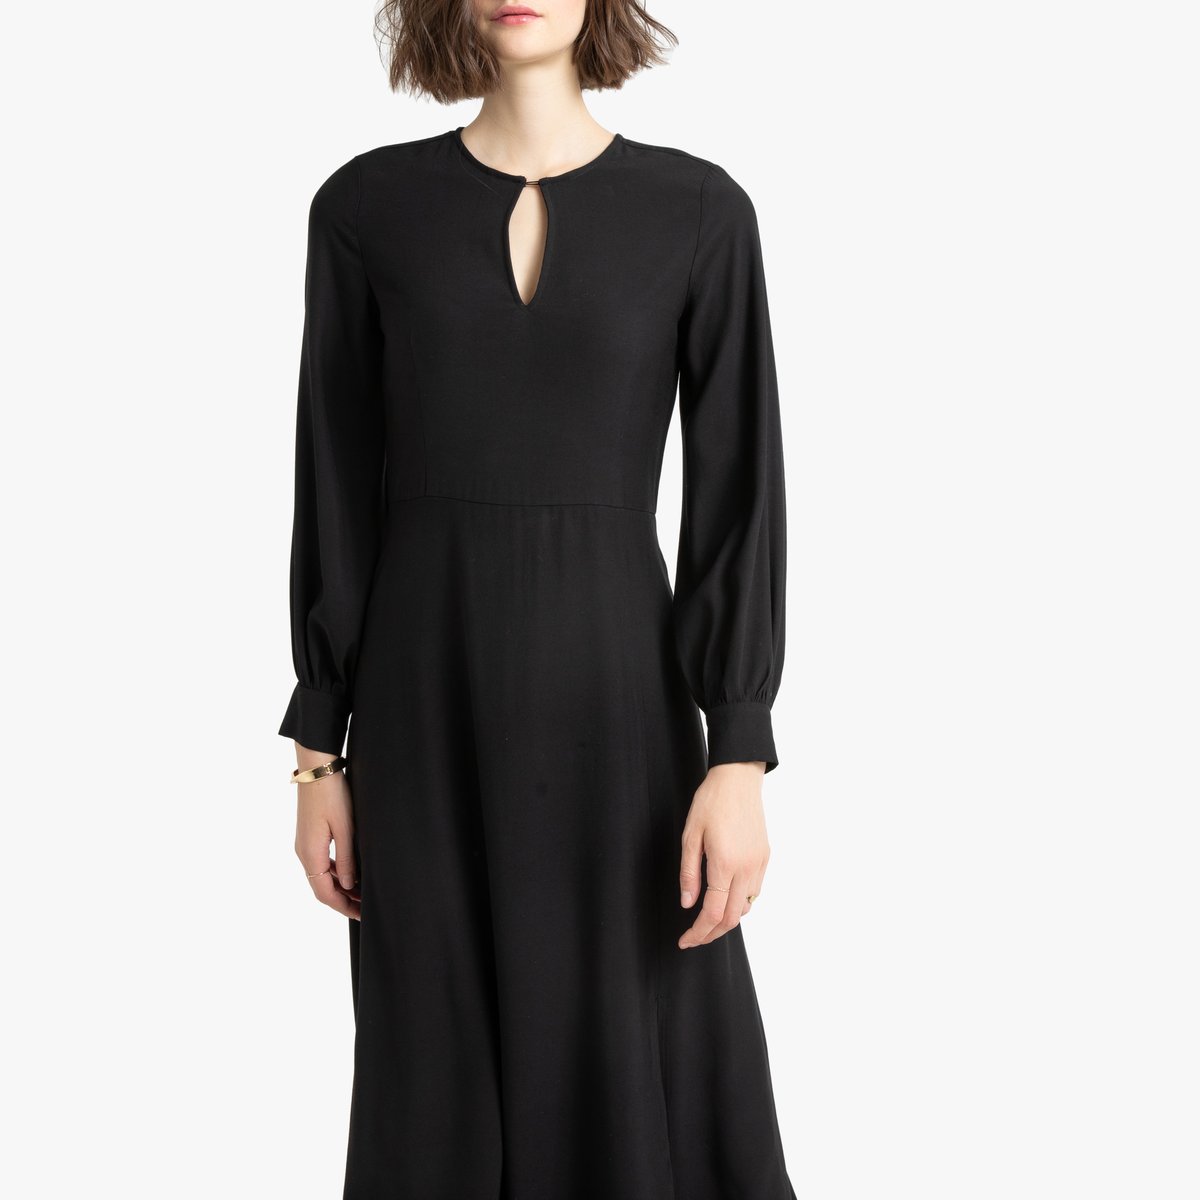 Платье La Redoute Макси с длинными рукавами 34 (FR) - 40 (RUS) черный, размер 34 (FR) - 40 (RUS) Макси с длинными рукавами 34 (FR) - 40 (RUS) черный - фото 2